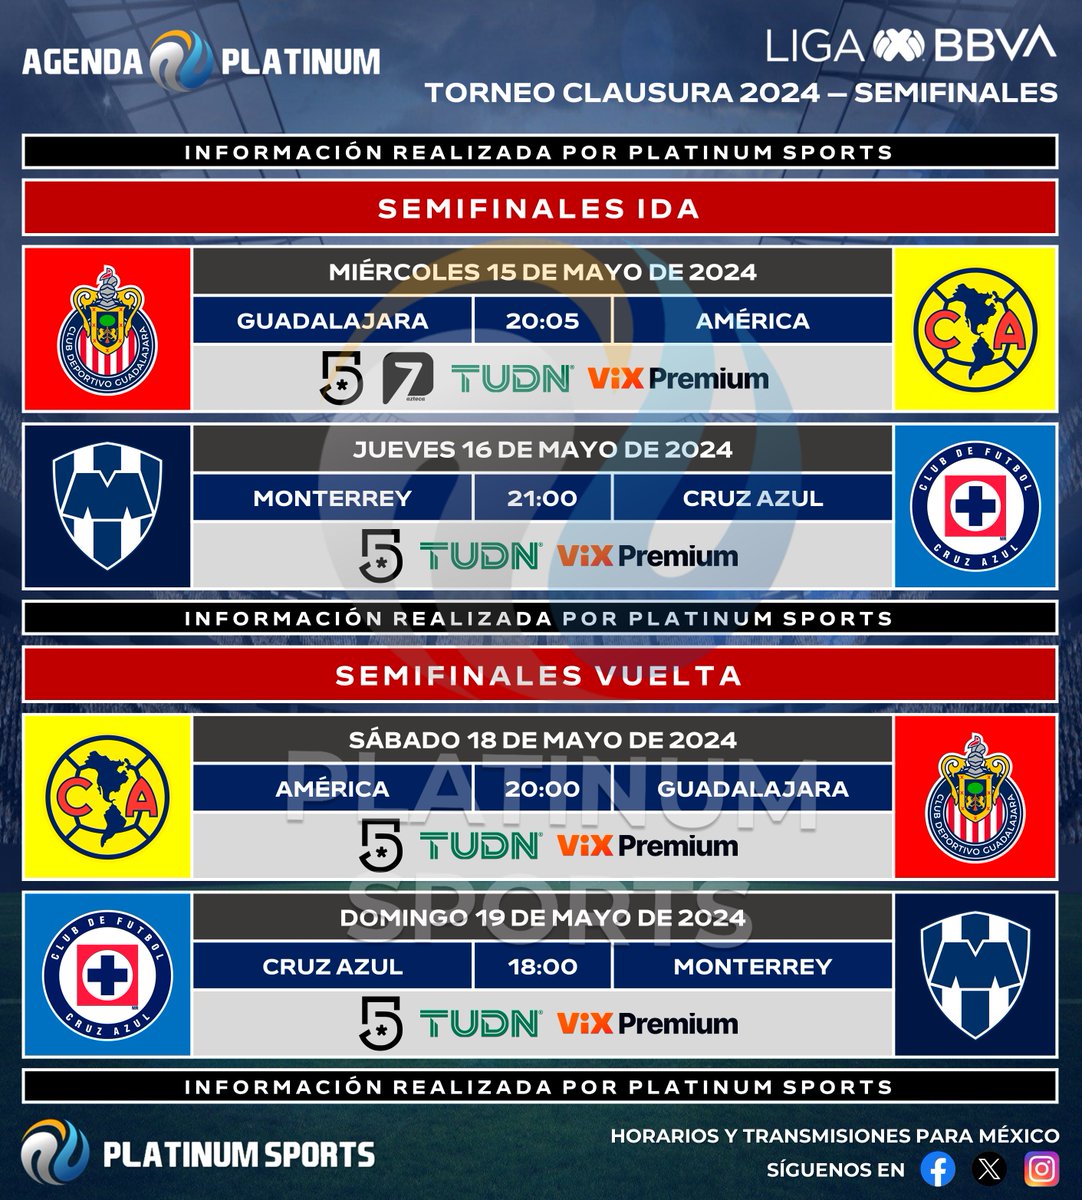 ⚽️ #AgendaPLATINUM 
🇲🇽 #LigaBBVAMX Clausura 2024 - Semifinales 

⏰📺 Horarios y transmisiones para México.
⚠️ Sujeto a cambios. 

#Clausura2024 - #Semifinales